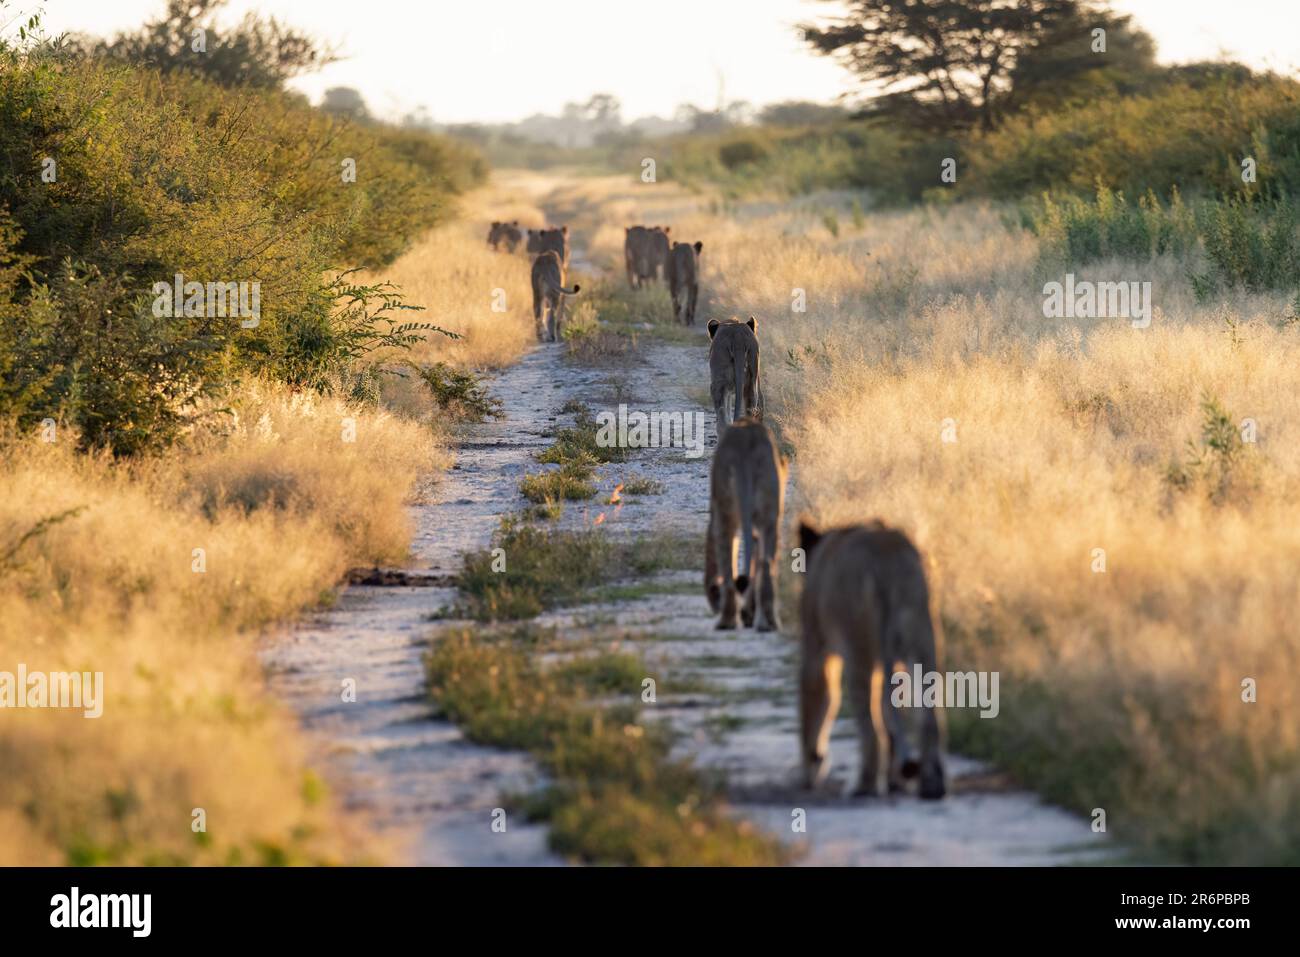 Fierté des lions (Panthera leo) marchant sur la route à Onguma Game Reserve, Namibie, Afrique Banque D'Images